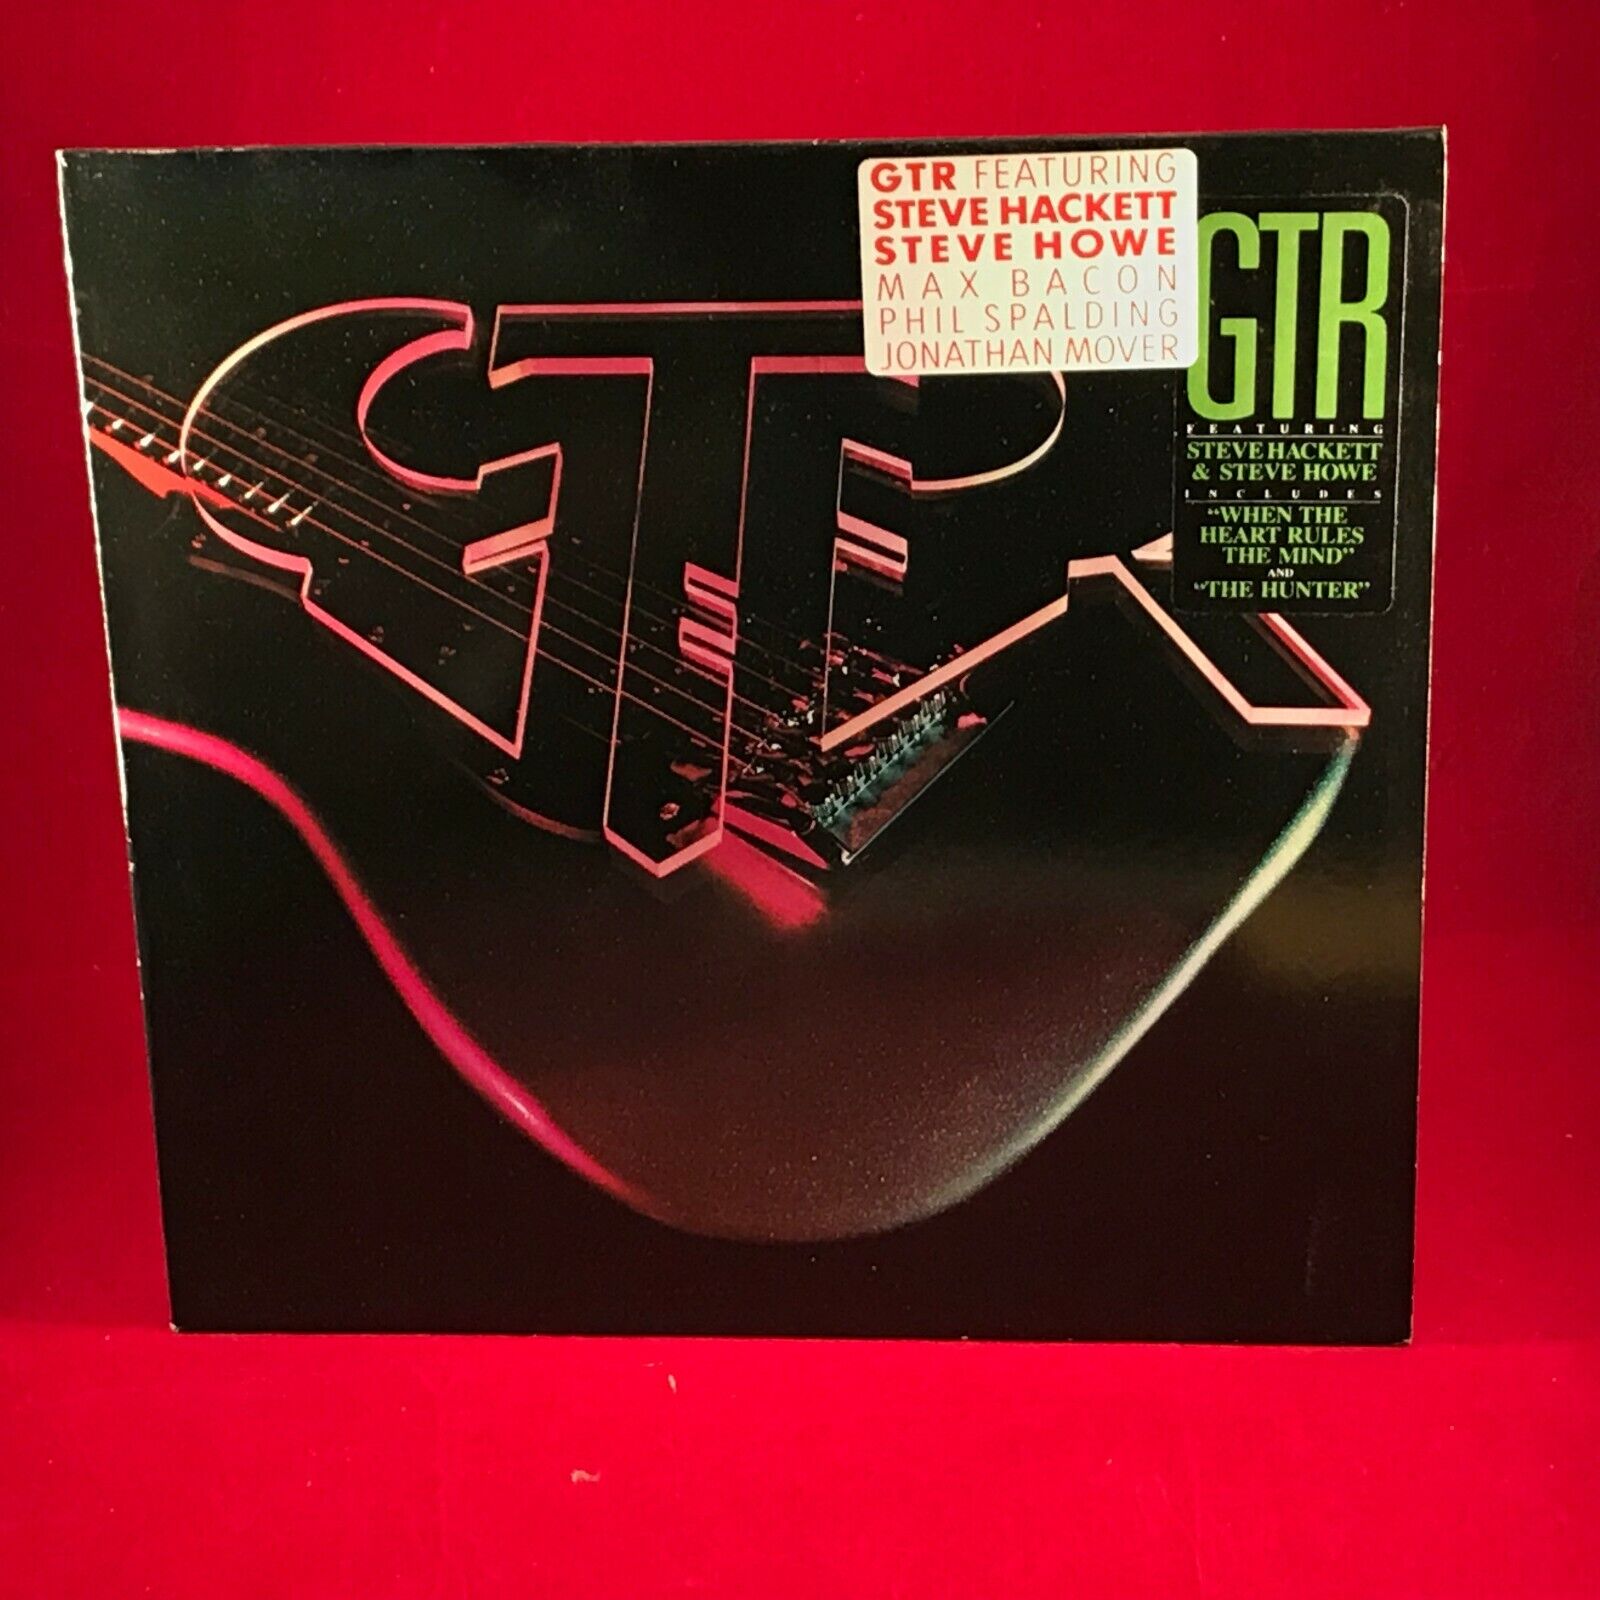 GTR 1986 German vinyl LP + INNER same Arista record Steve Howe Genesis Yes